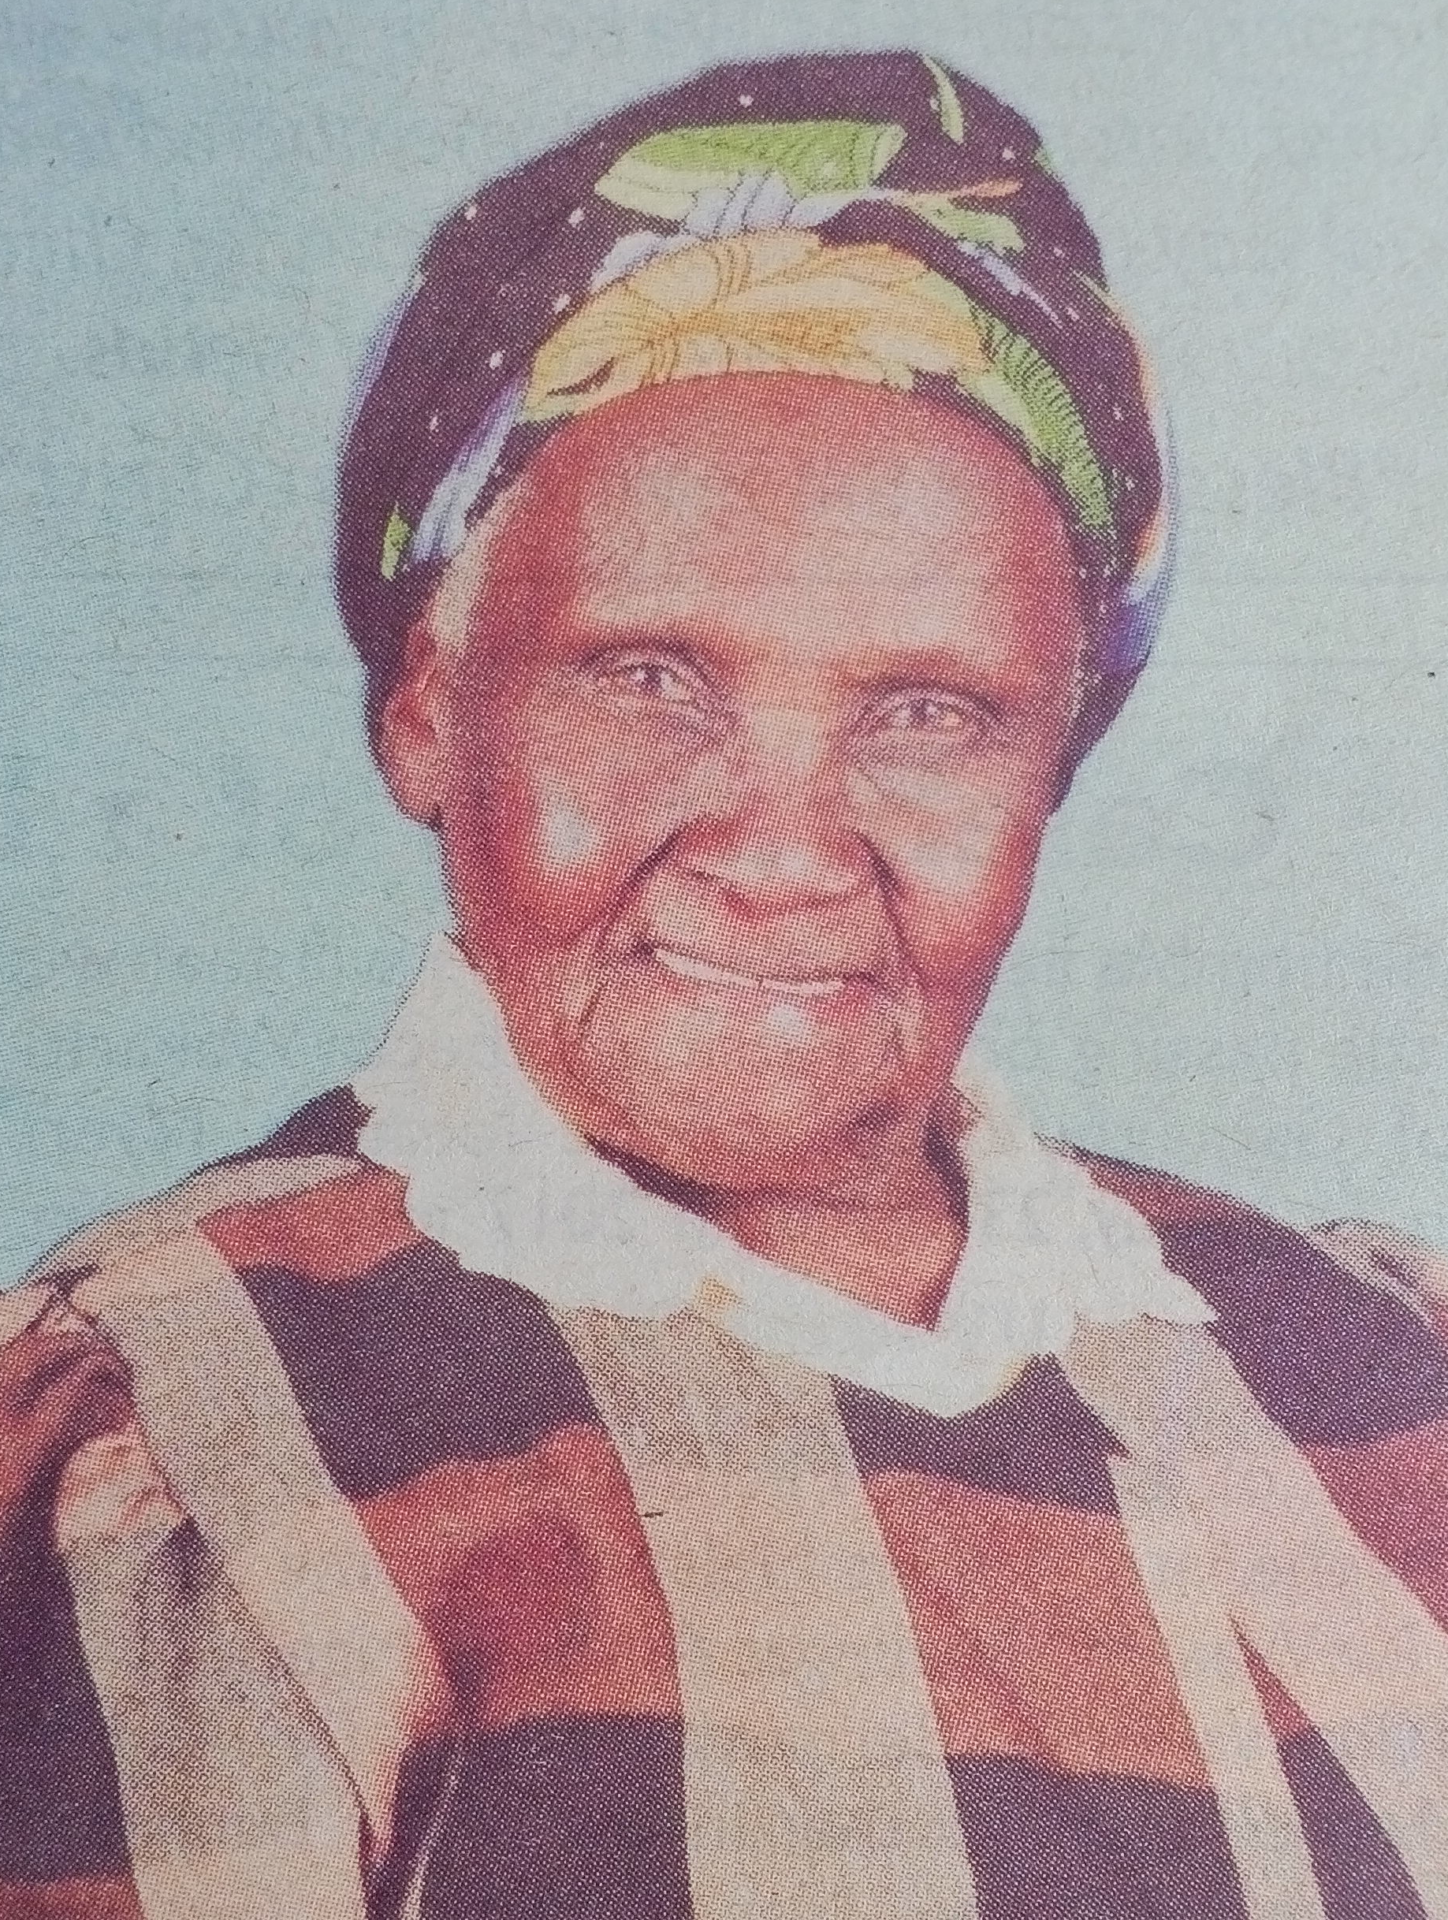 Obituary Image of Virginiah Njeri Kinyanjui (Cucu Iginia)